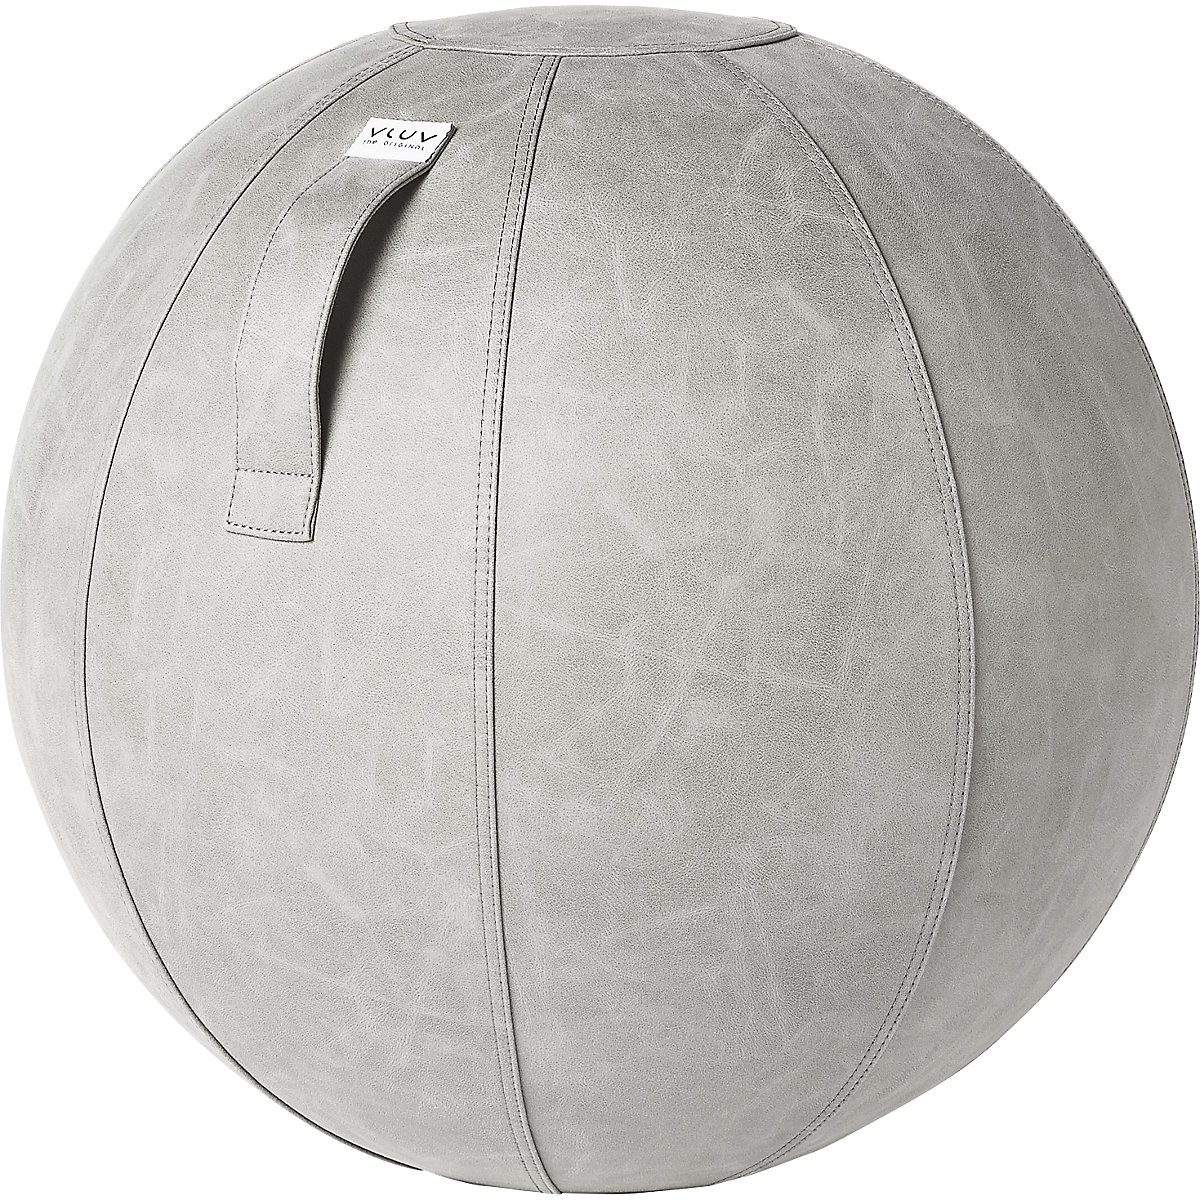 Fitball VEGA – VLUV, similpelle vegana, 600 – 650 mm, cemento-8